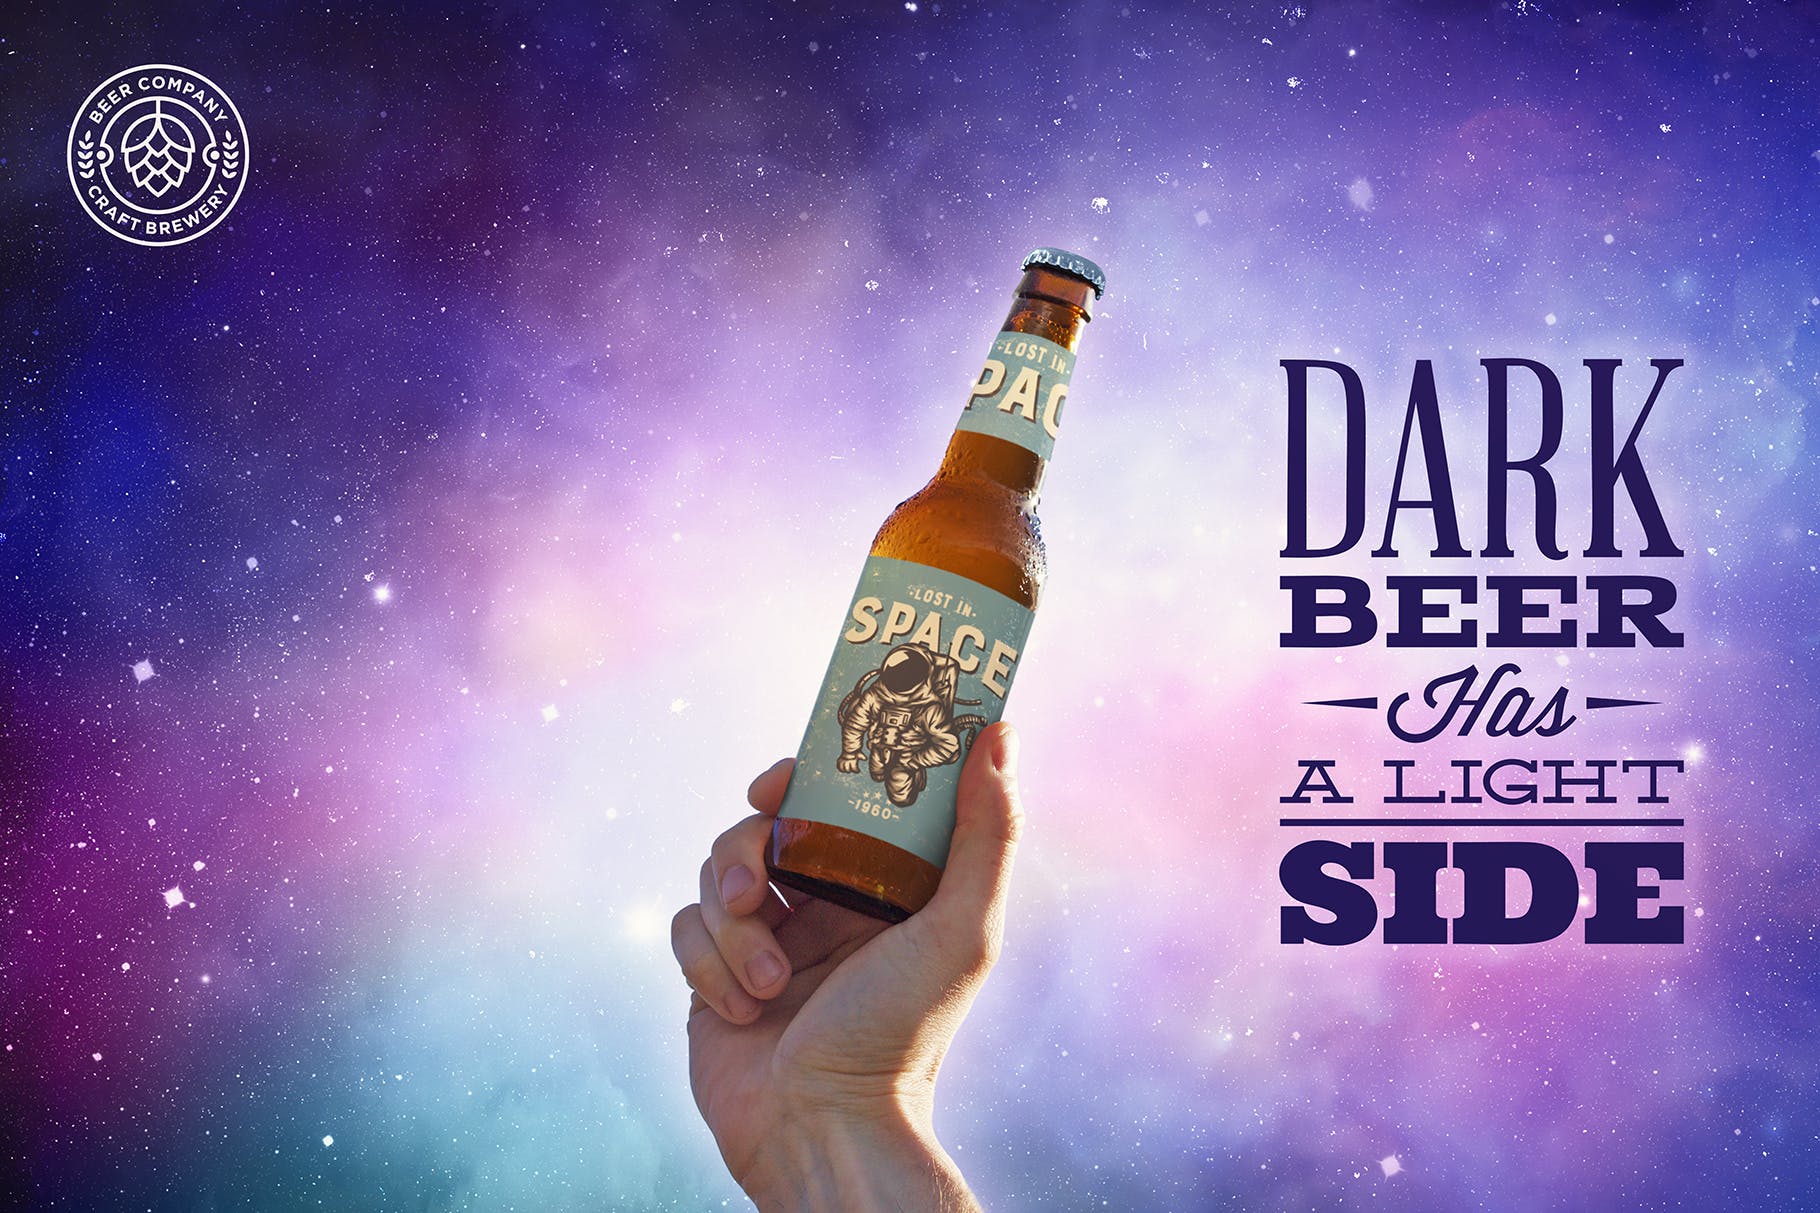 天空背景啤酒瓶外观设计图第一素材精选 Sky Backgrounds Beer Mockup插图(3)